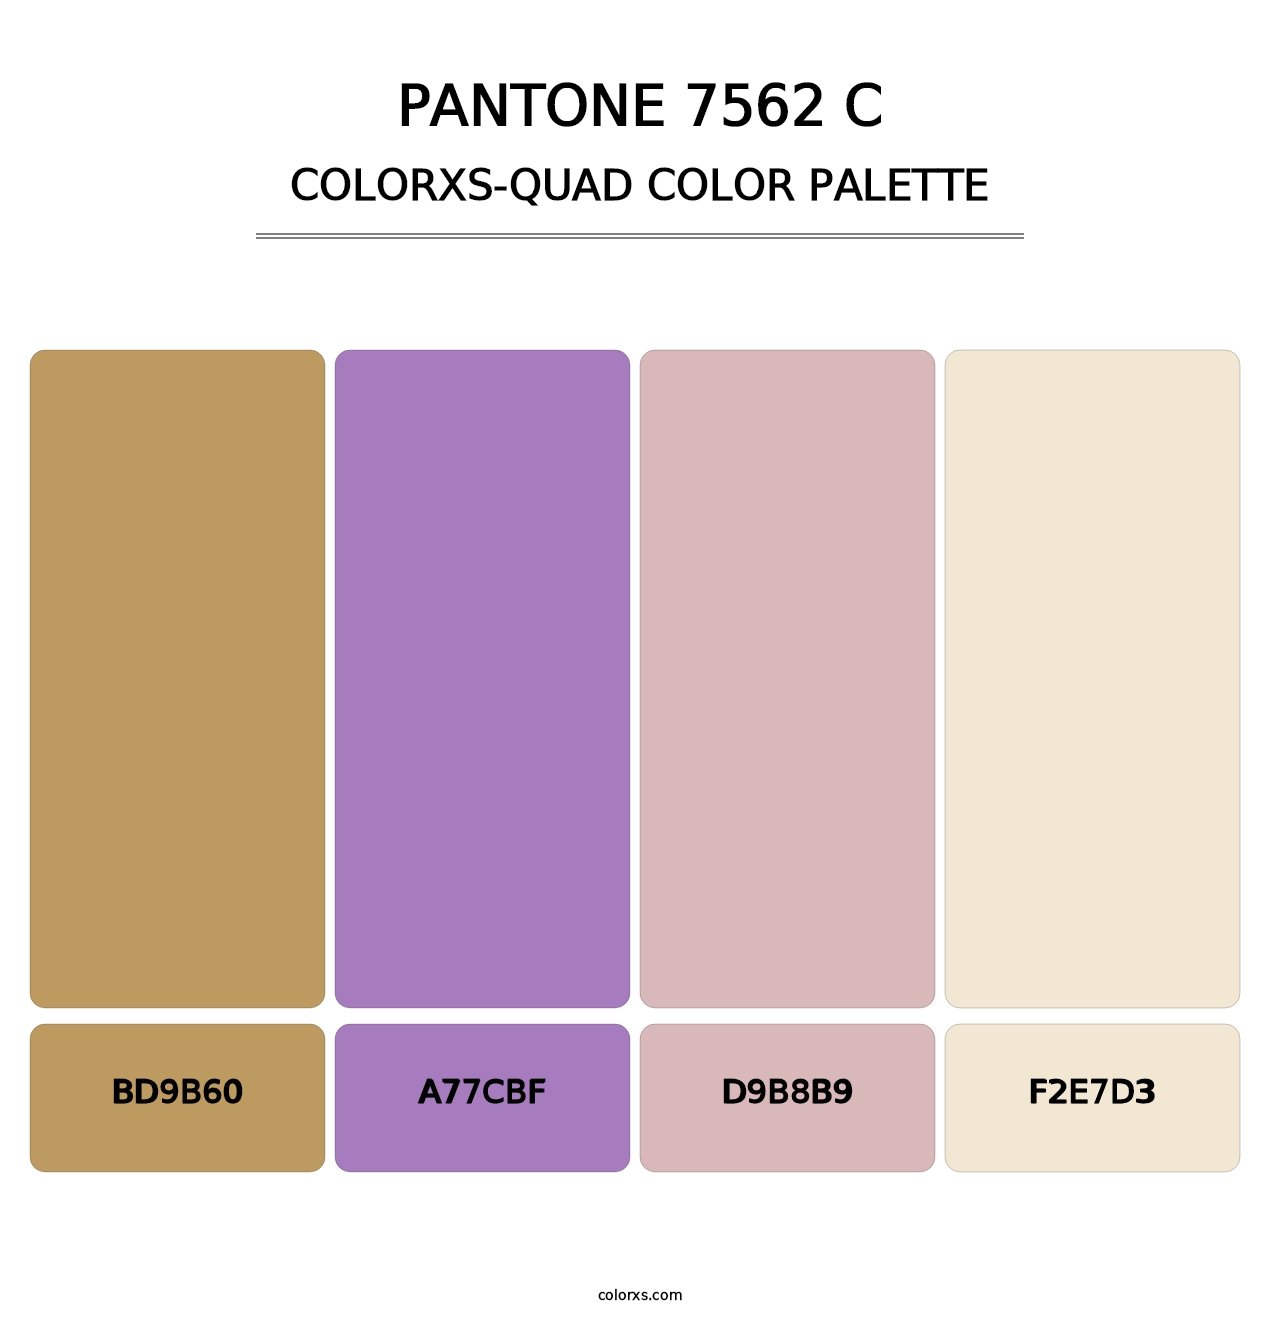 PANTONE 7562 C - Colorxs Quad Palette